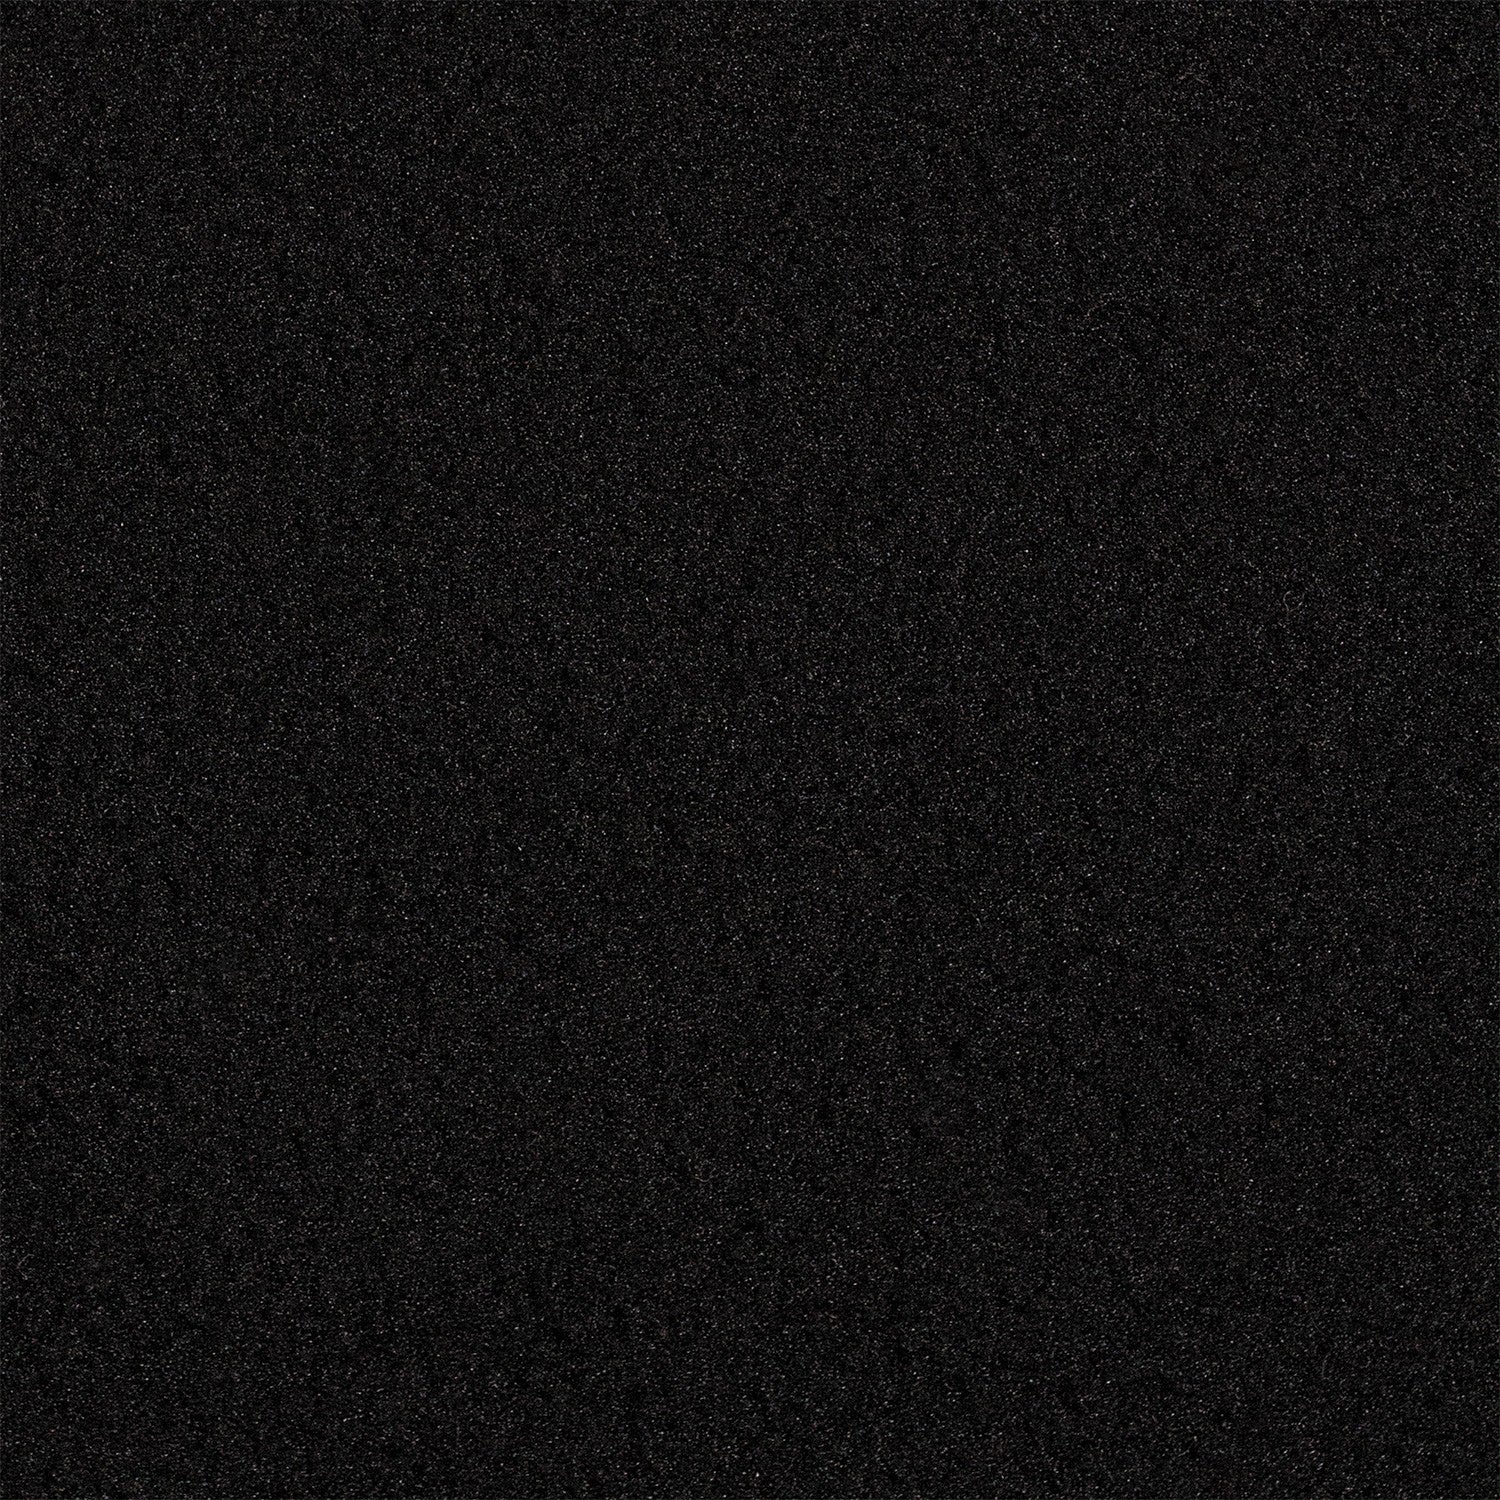 Westcott X-Drop Background (5x7’ Black)